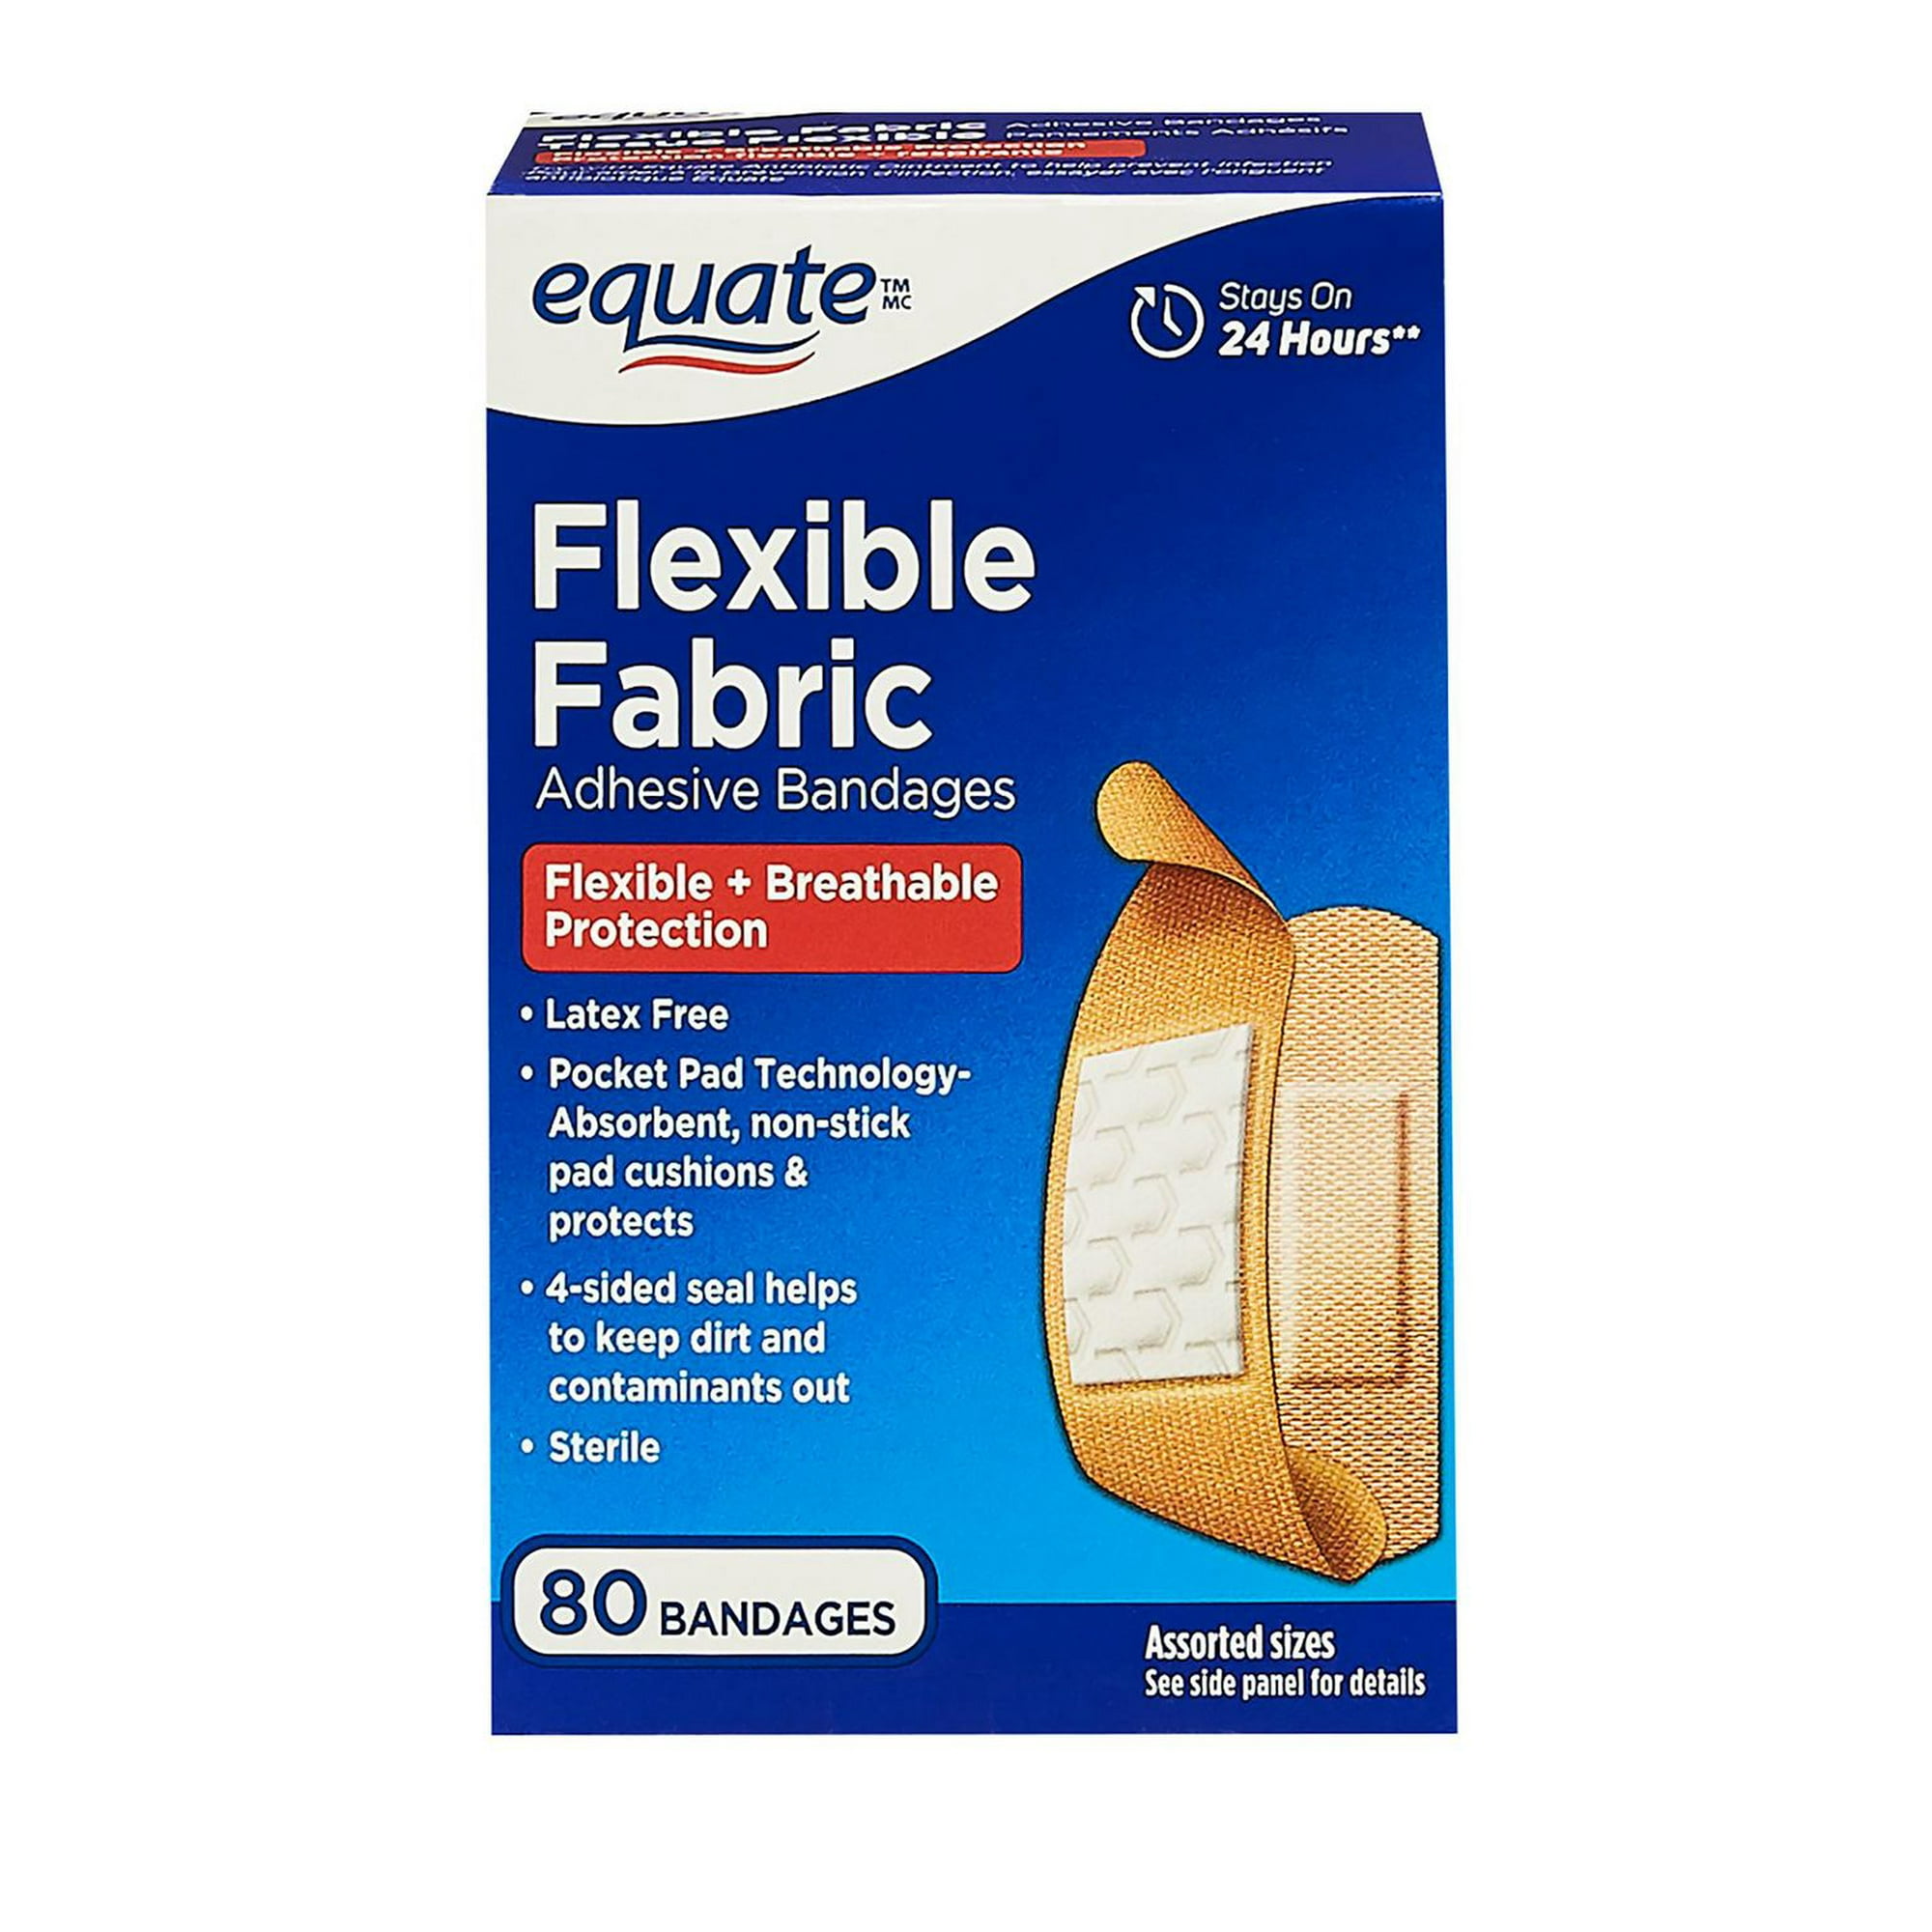 Equate Flexible Fabric Adhesive Bandages, 80 bandages 